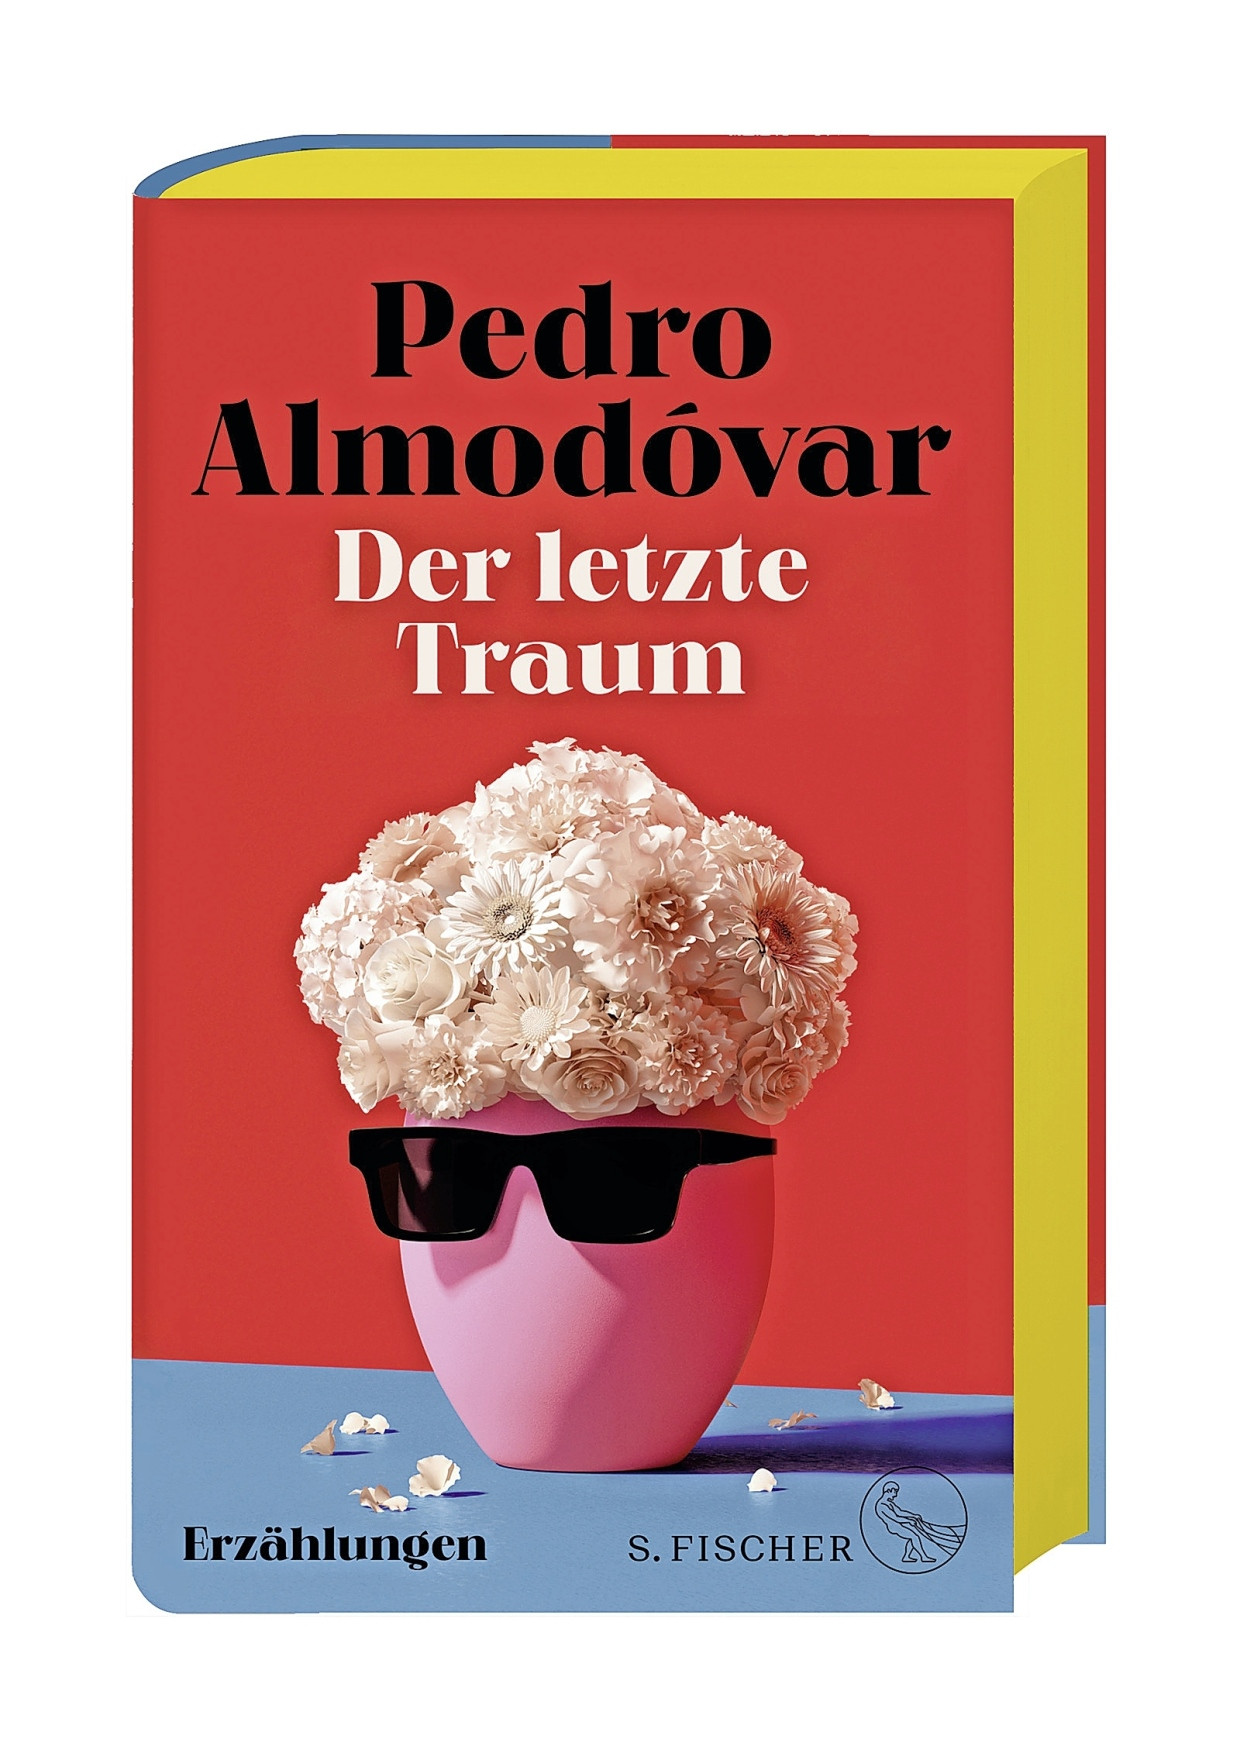 Das Cover zu Pedro Amodóvars Erzählungsband